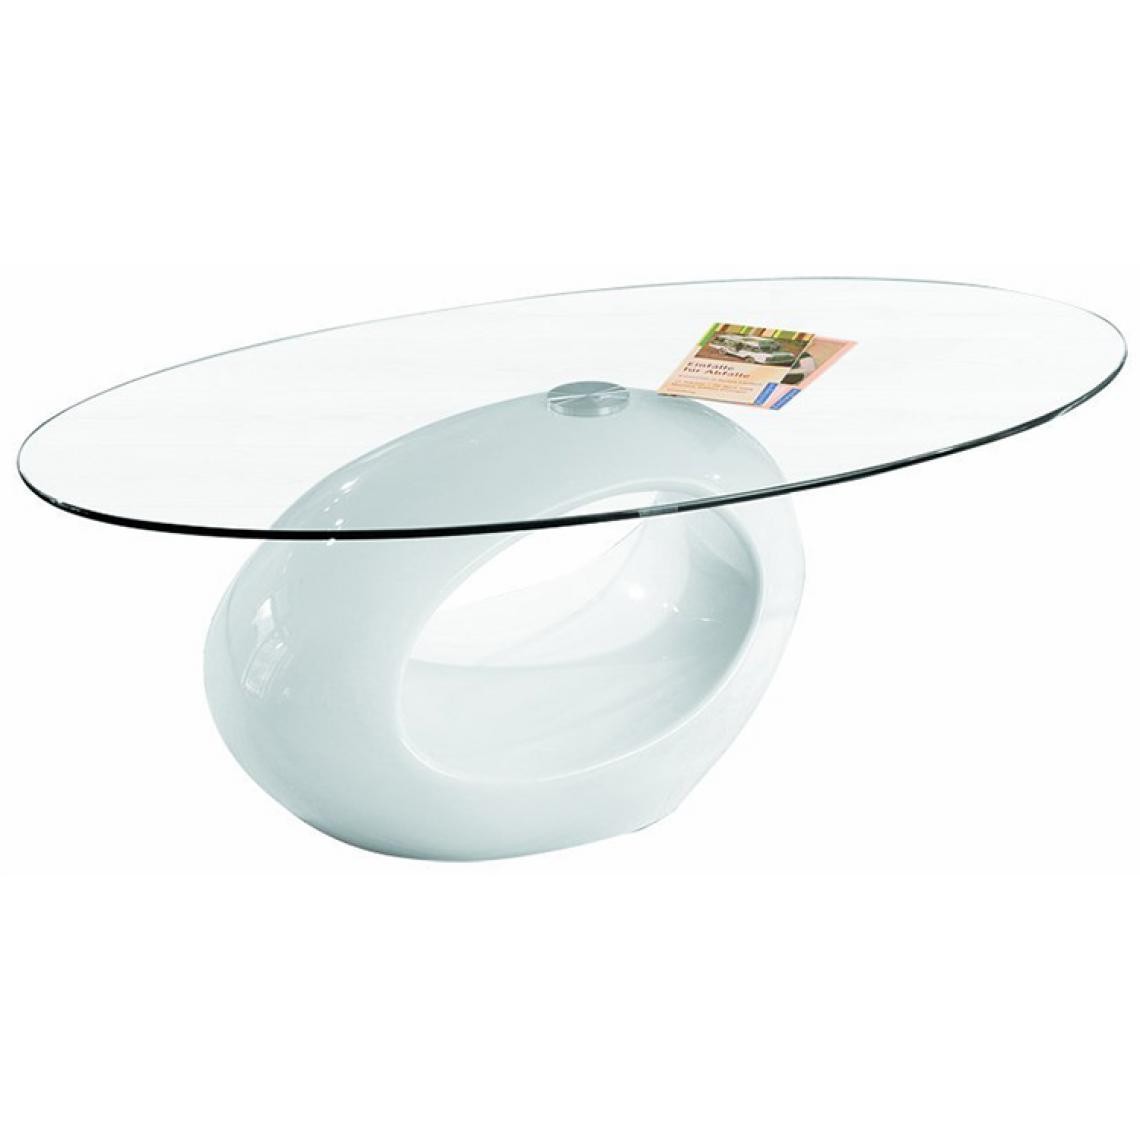 Pegane - Table Basse Pucci Blanc, Dim : 110 x 60 x 40 cm - Tables basses